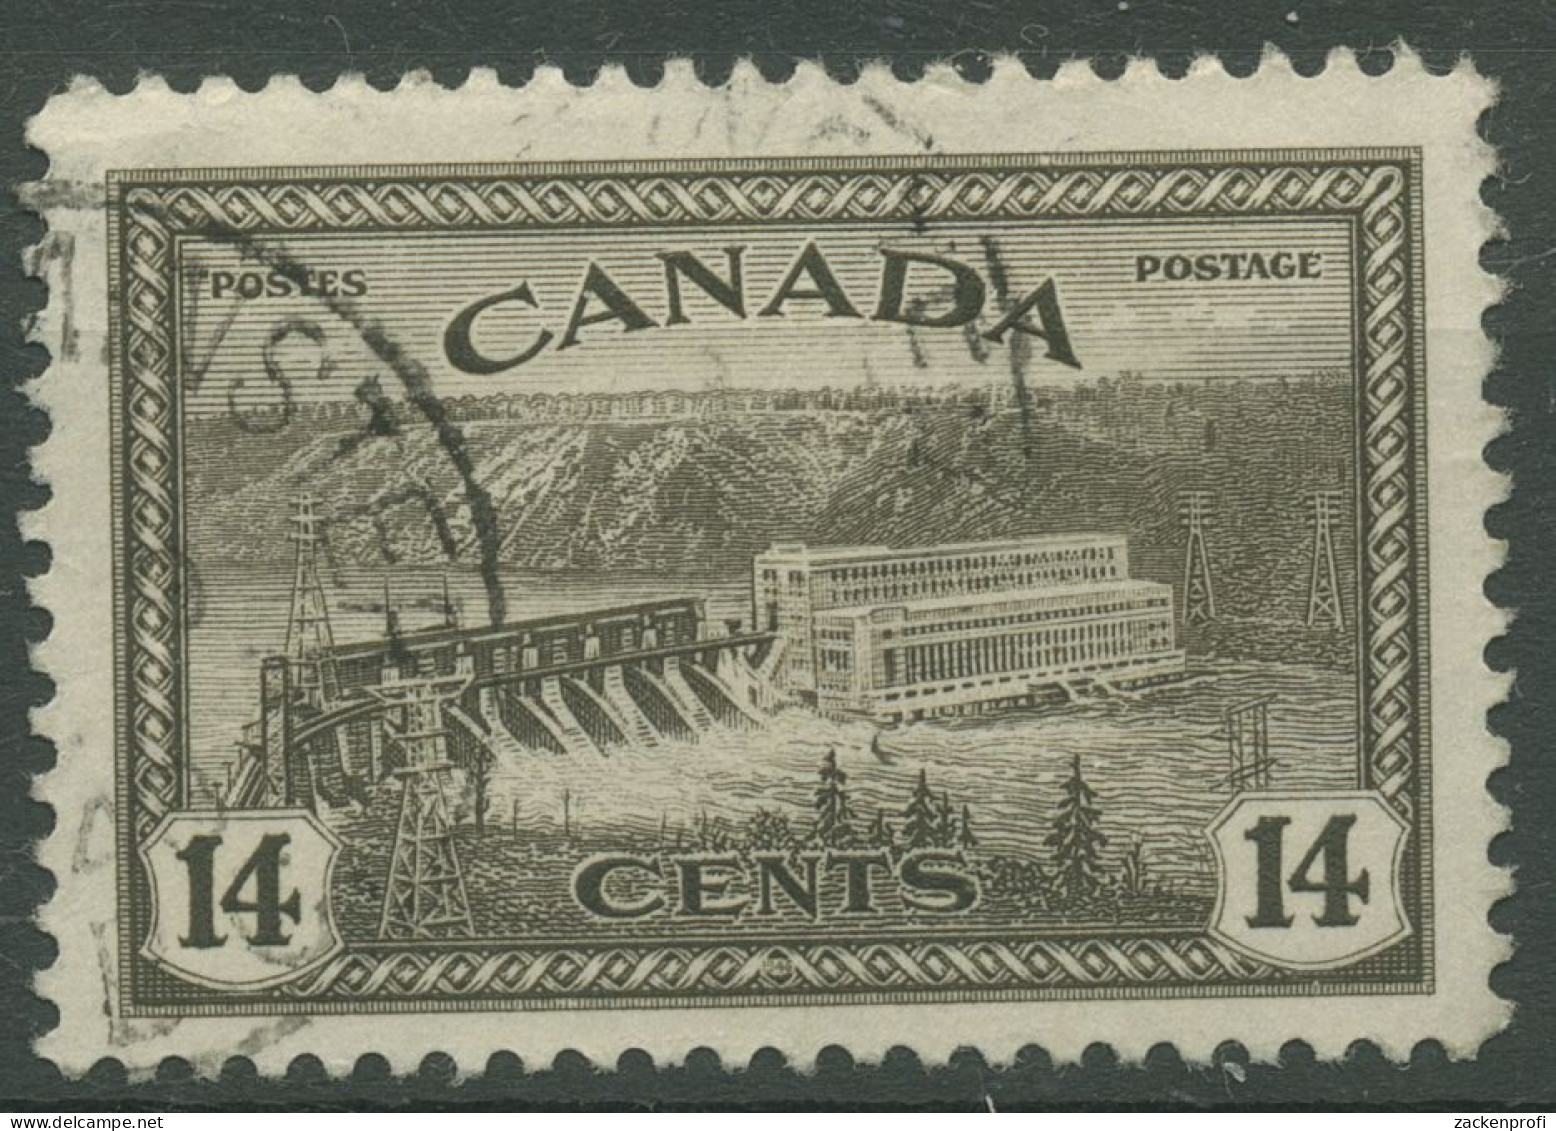 Kanada 1946 Umstellung Auf Friedensproduktion Wasserkraftwerk 237 Gestempelt - Gebruikt